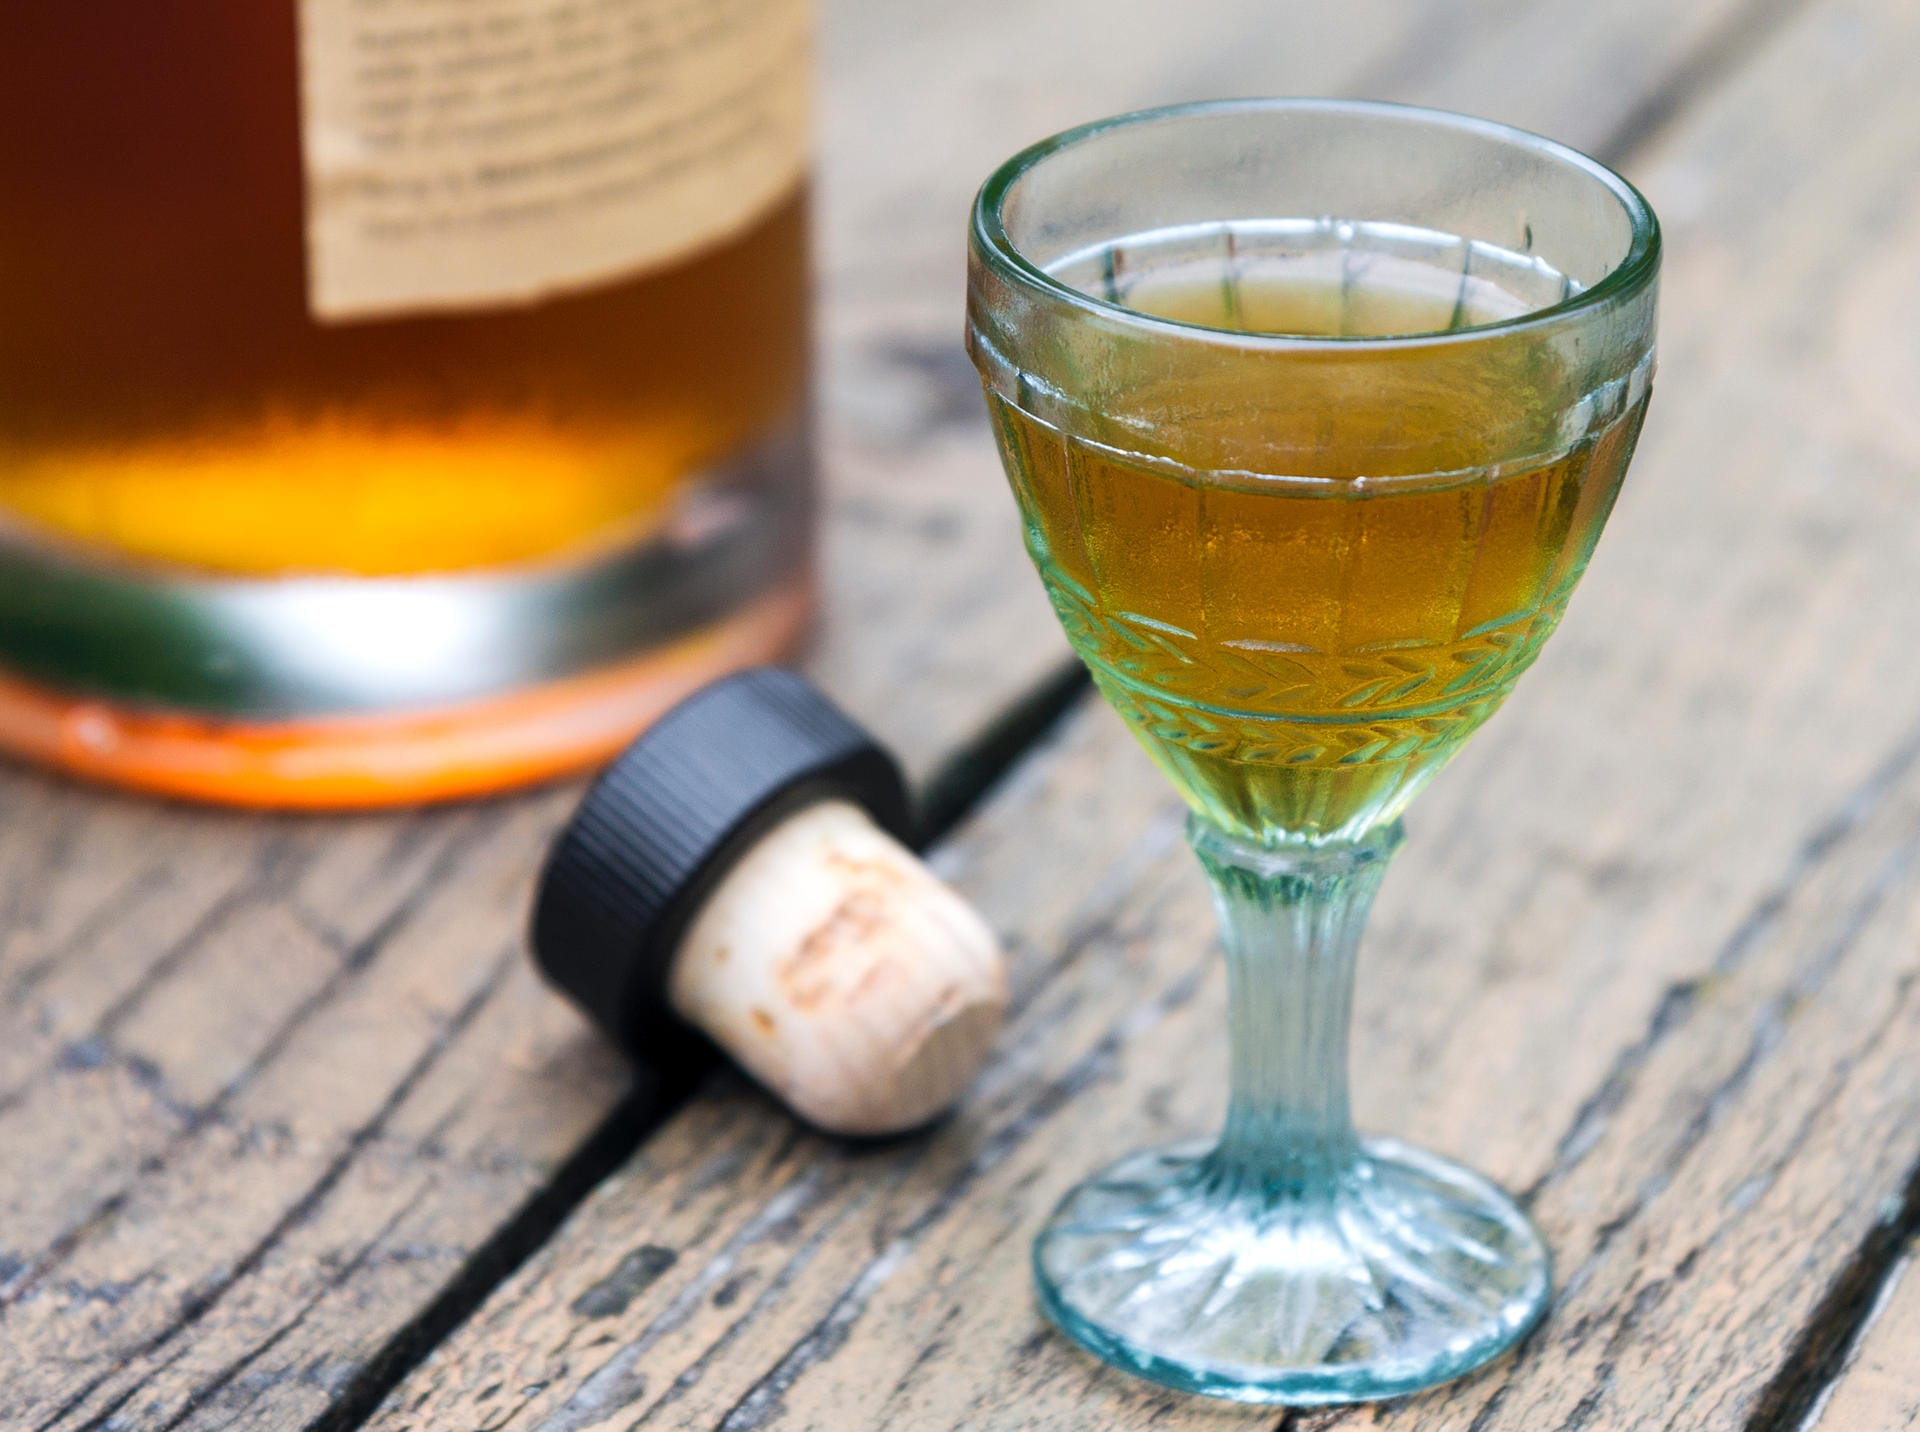 Der Korken einer Whiskyflasche ist im Unterschied zum Sekt- oder Weinkorken für die mehrfache Benutzung geeignet und schließt nicht so perfekt. Deshalb sollte eine Whiskyflasche nie liegend gelagert werden.k